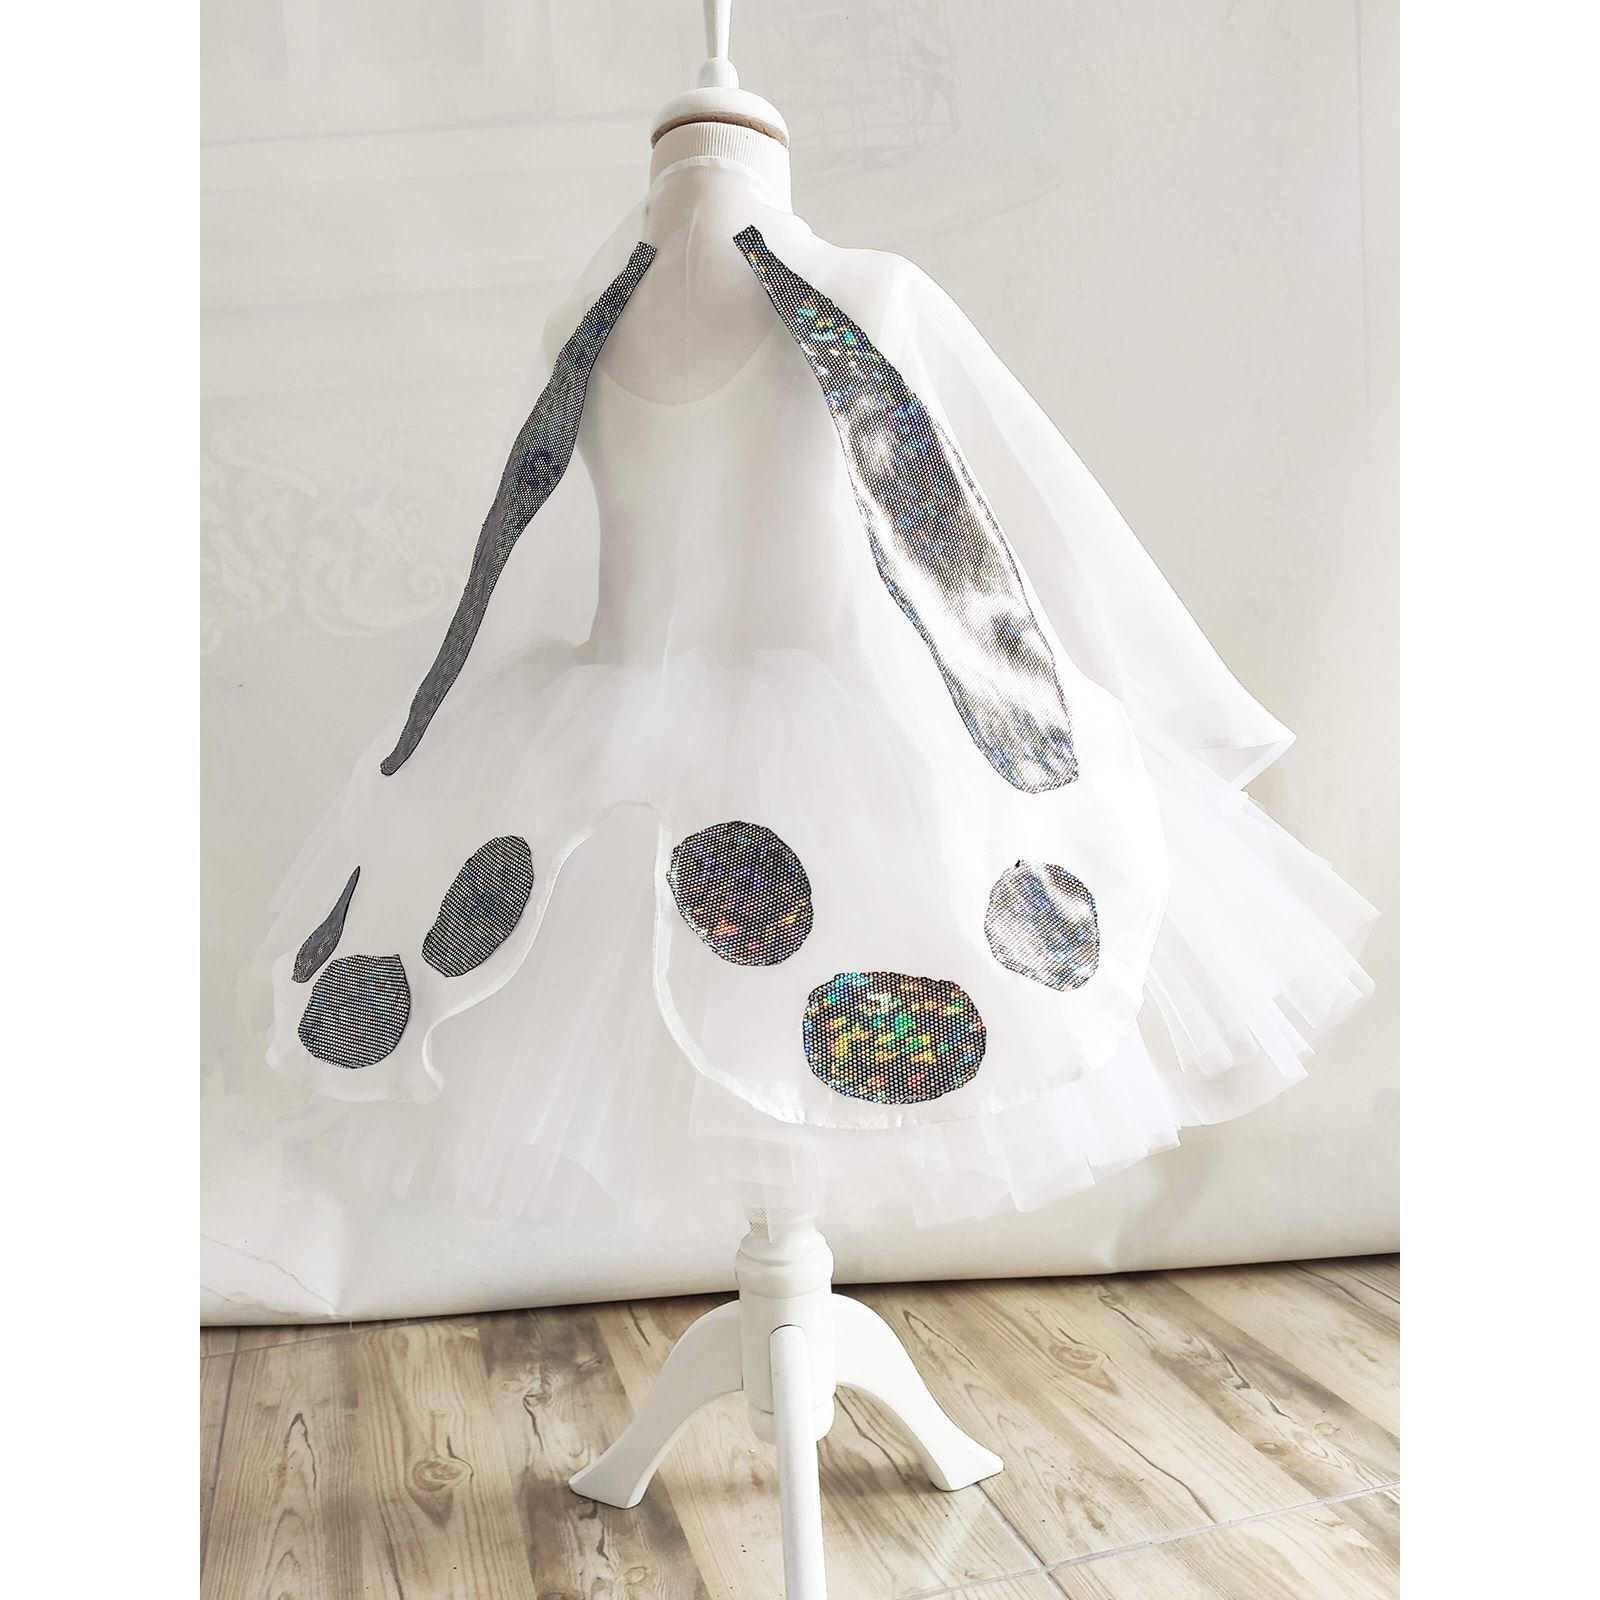 Shecco Babba Balerin Model Kız Çocuk Tütü Elbise, Kelebek Pelerin ve Bandana Takımı - Çocuk Abiye Elbise 1-5 Yaş Abiye Beyaz